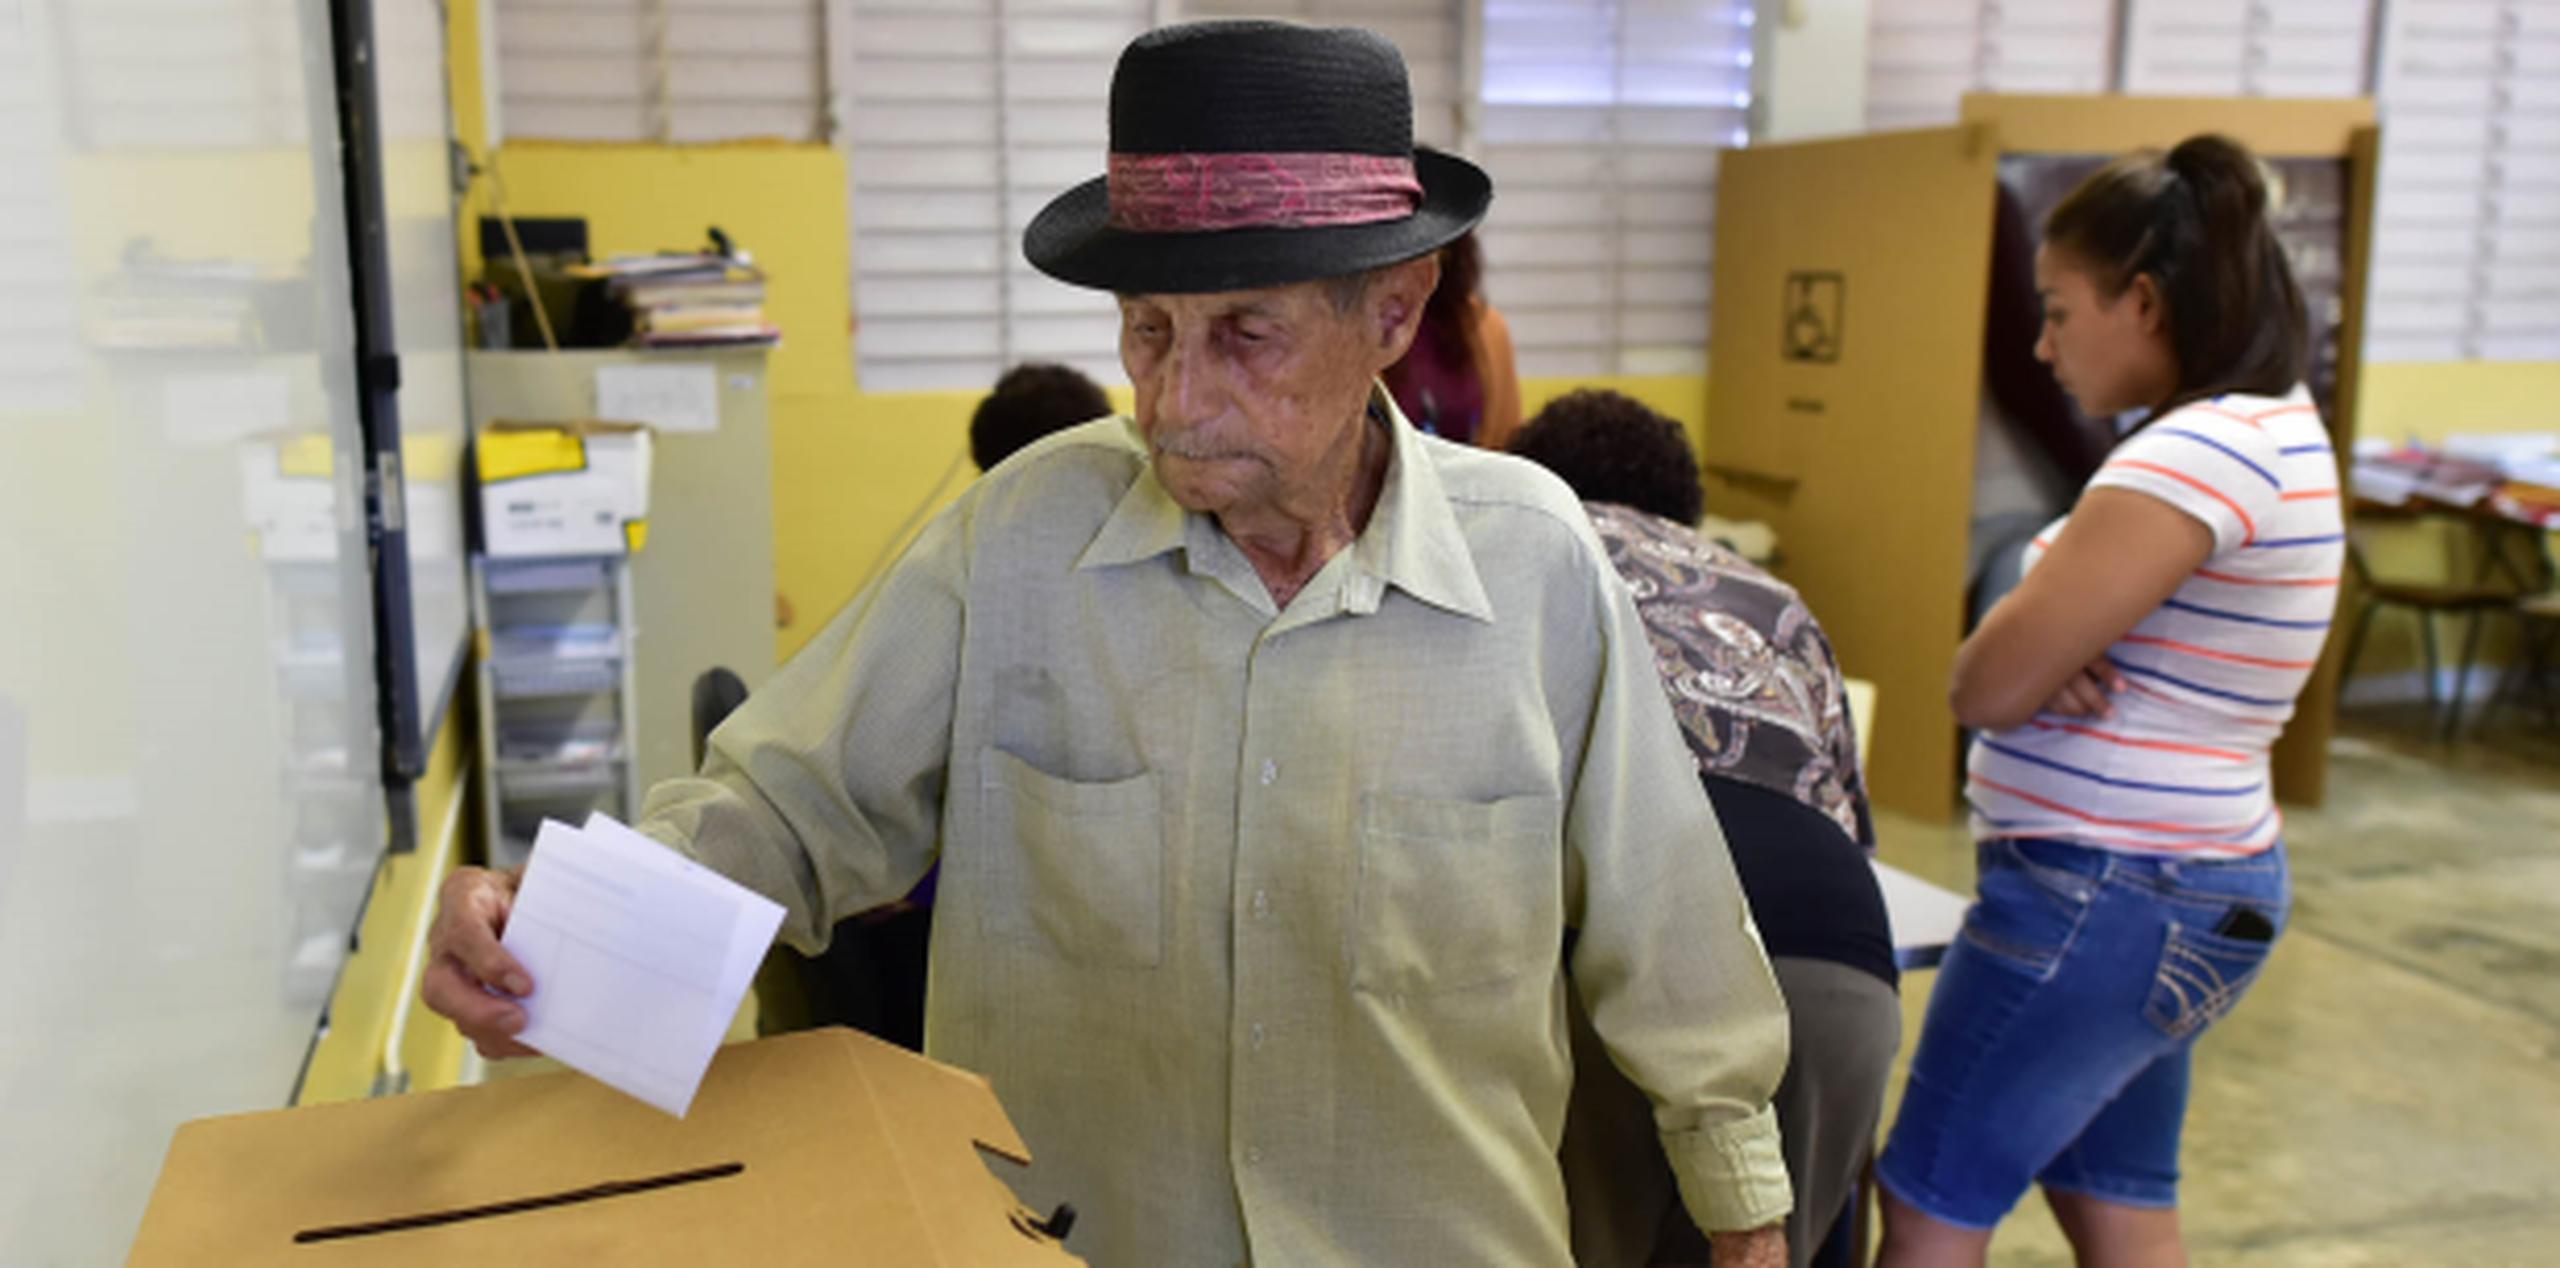 Rafael Gómez ejerce tempranito su derecho al voto en Vieques. (LUIS.ALCALADELOLMO@GFRMEDIA.COM)
